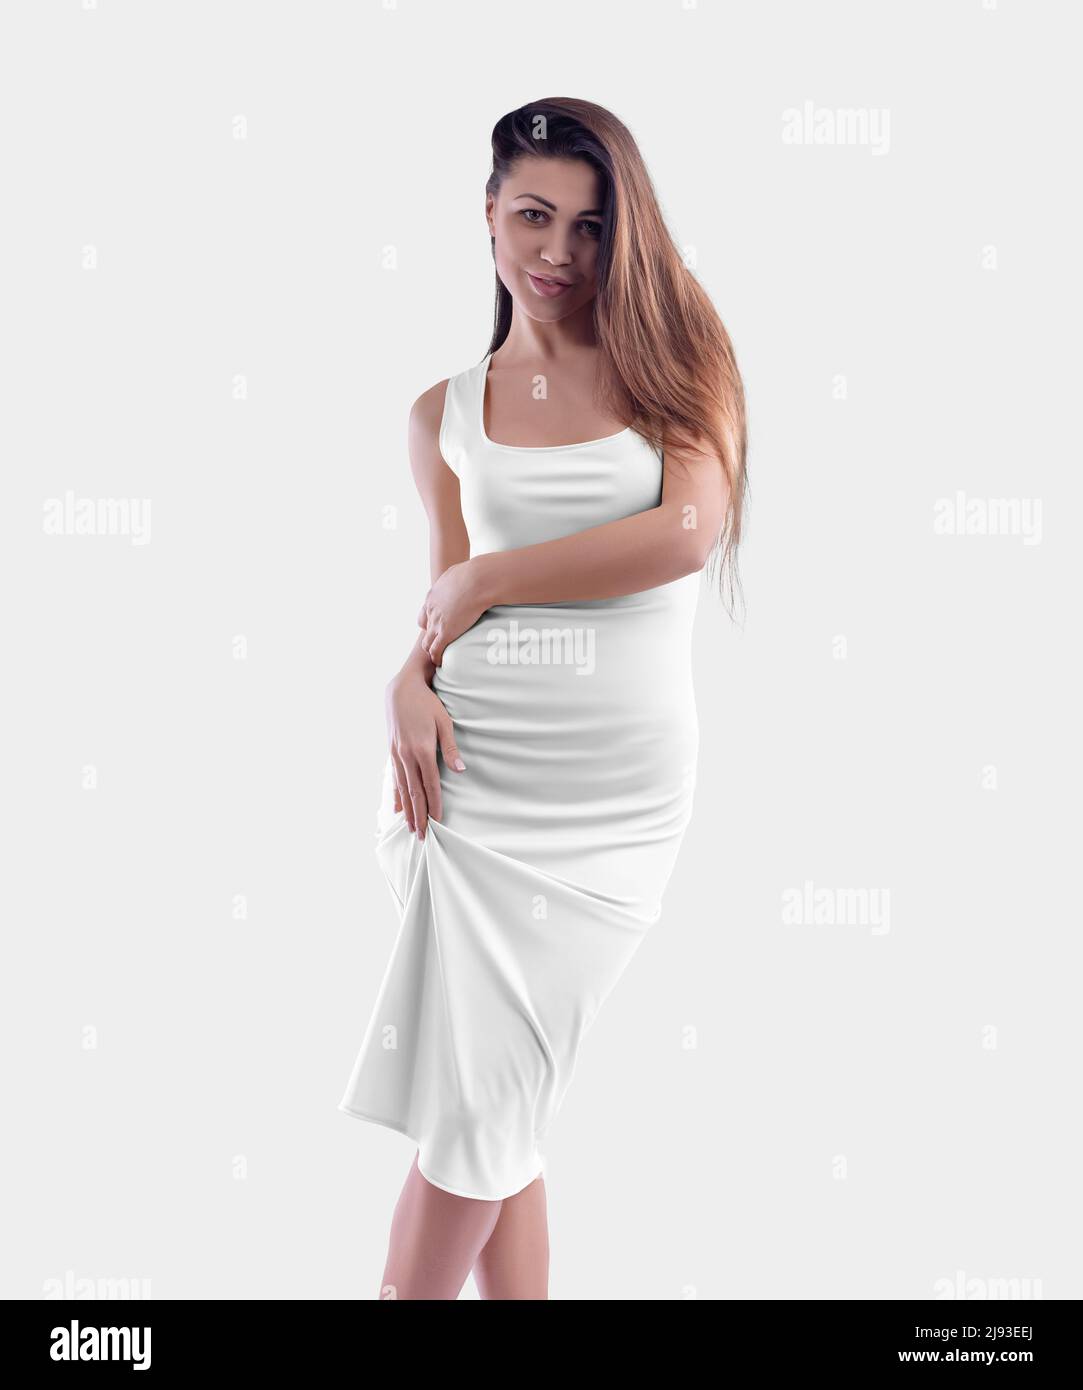 Awesom slim woman in sexy dress Stock Photo - Alamy